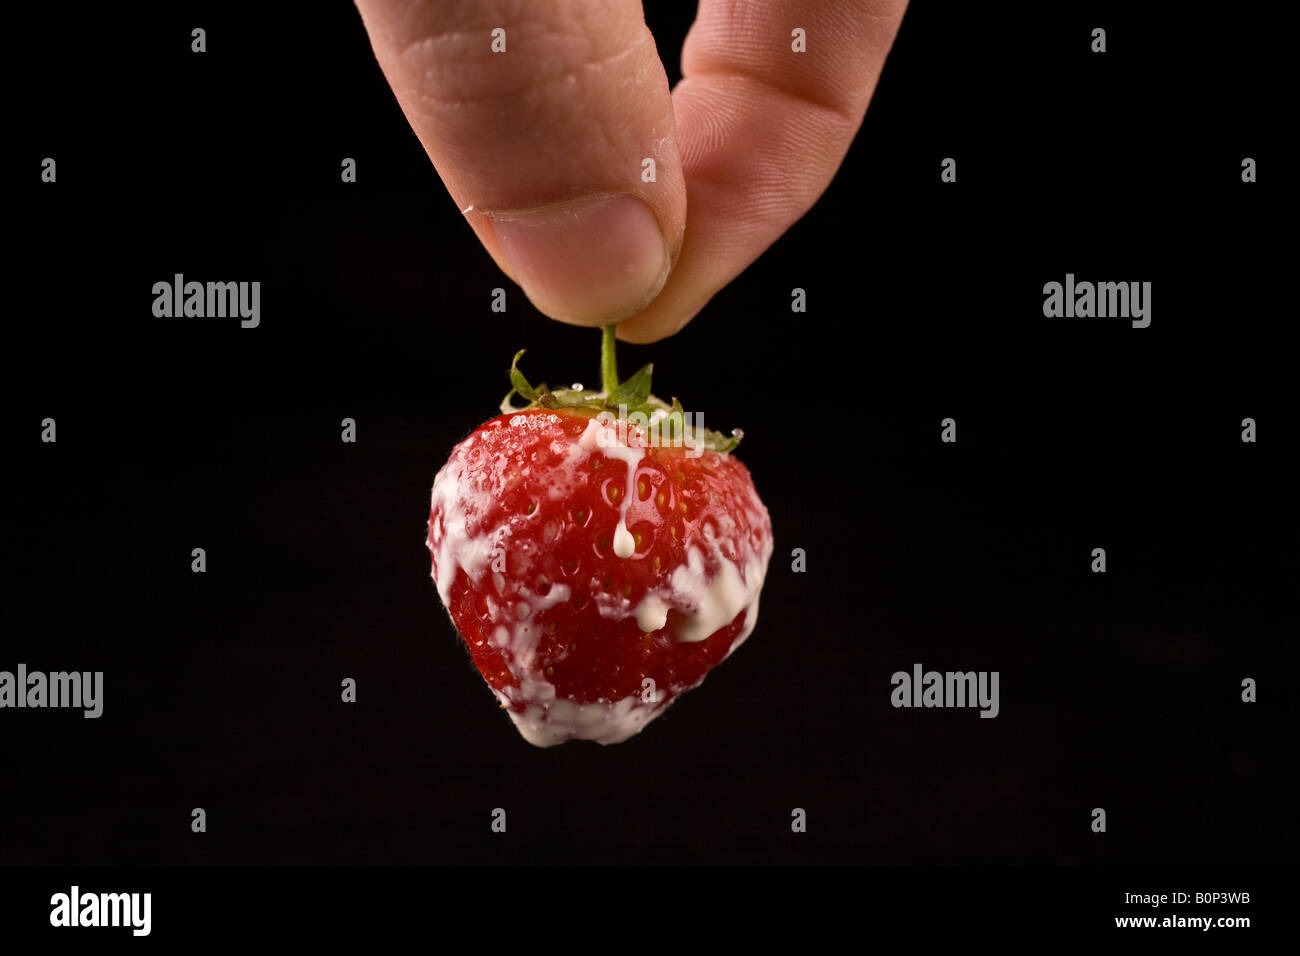 Pinching a strawberry Stock Photo